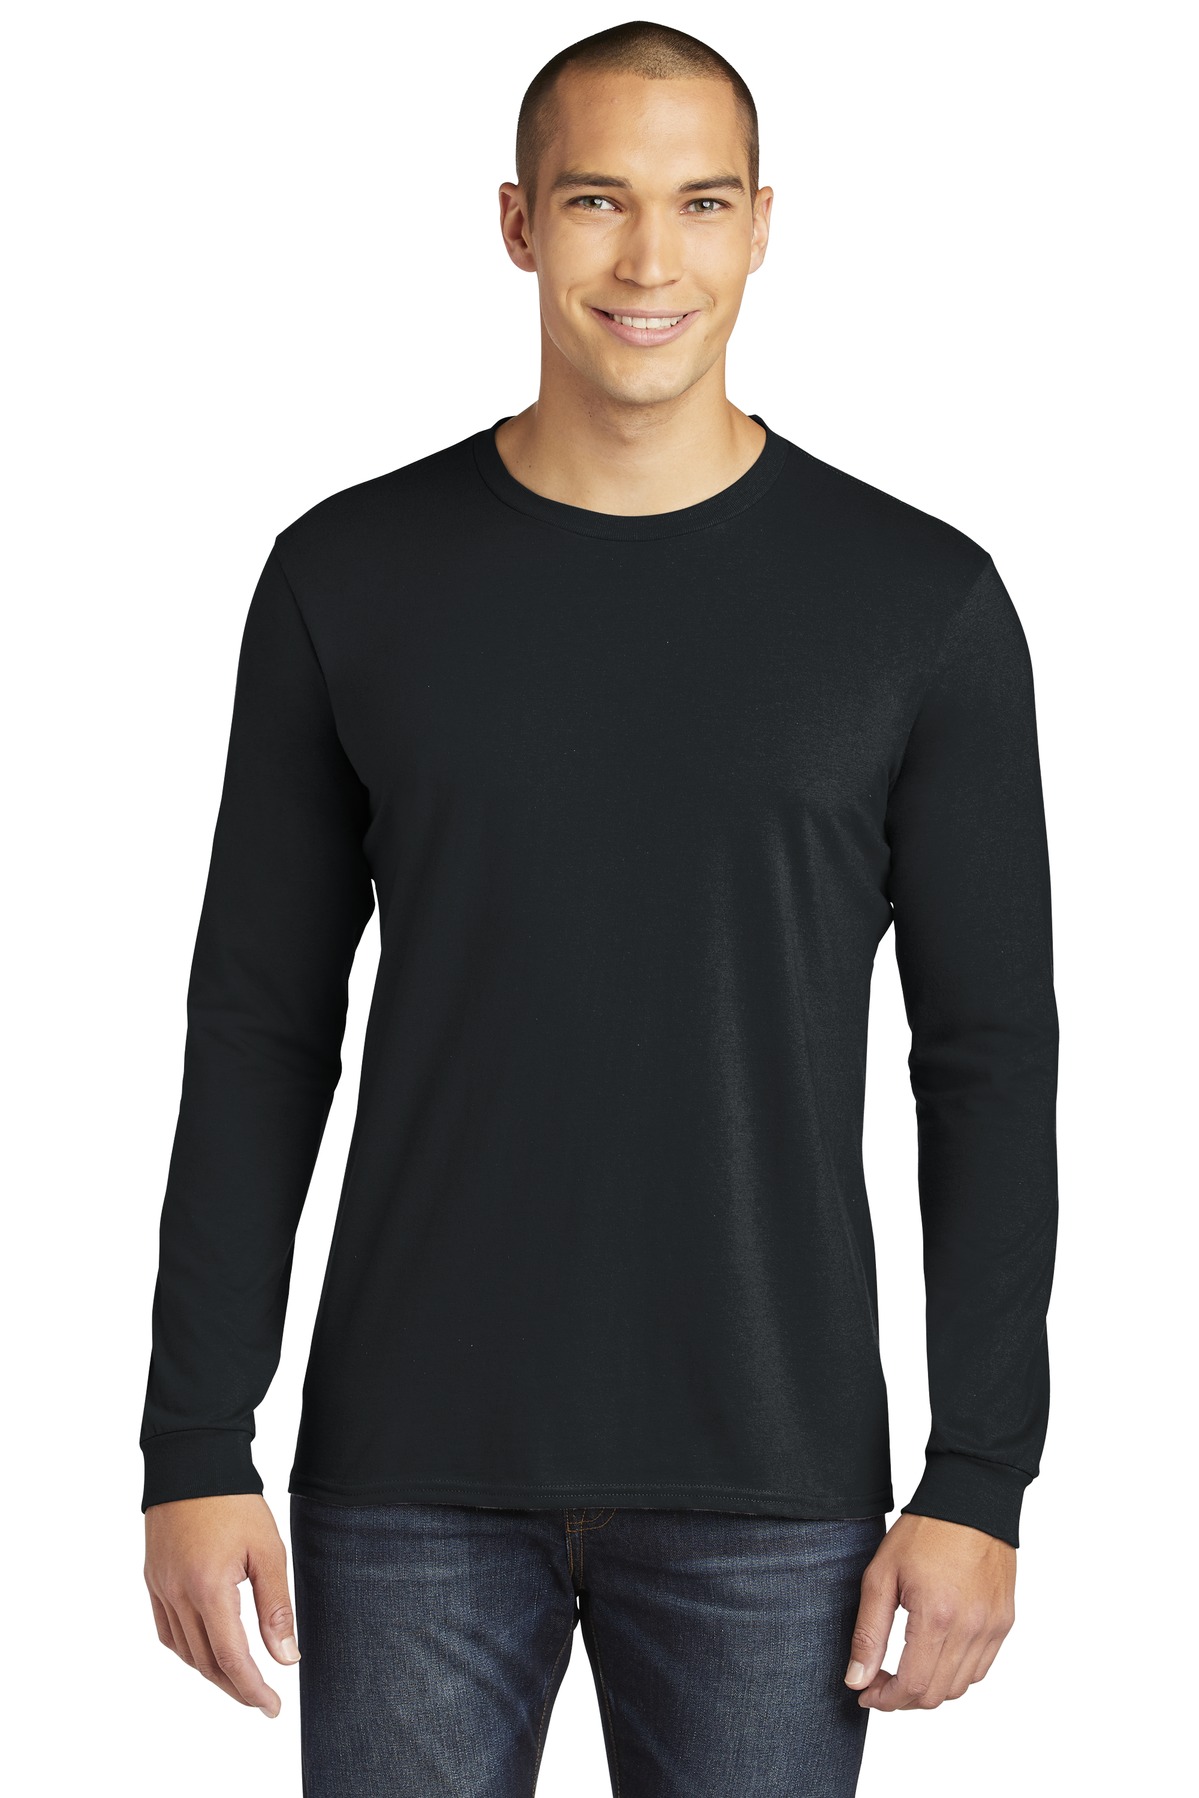 Gildan  100% Combed Ring Spun Cotton Long Sleeve T-Shirt. 949